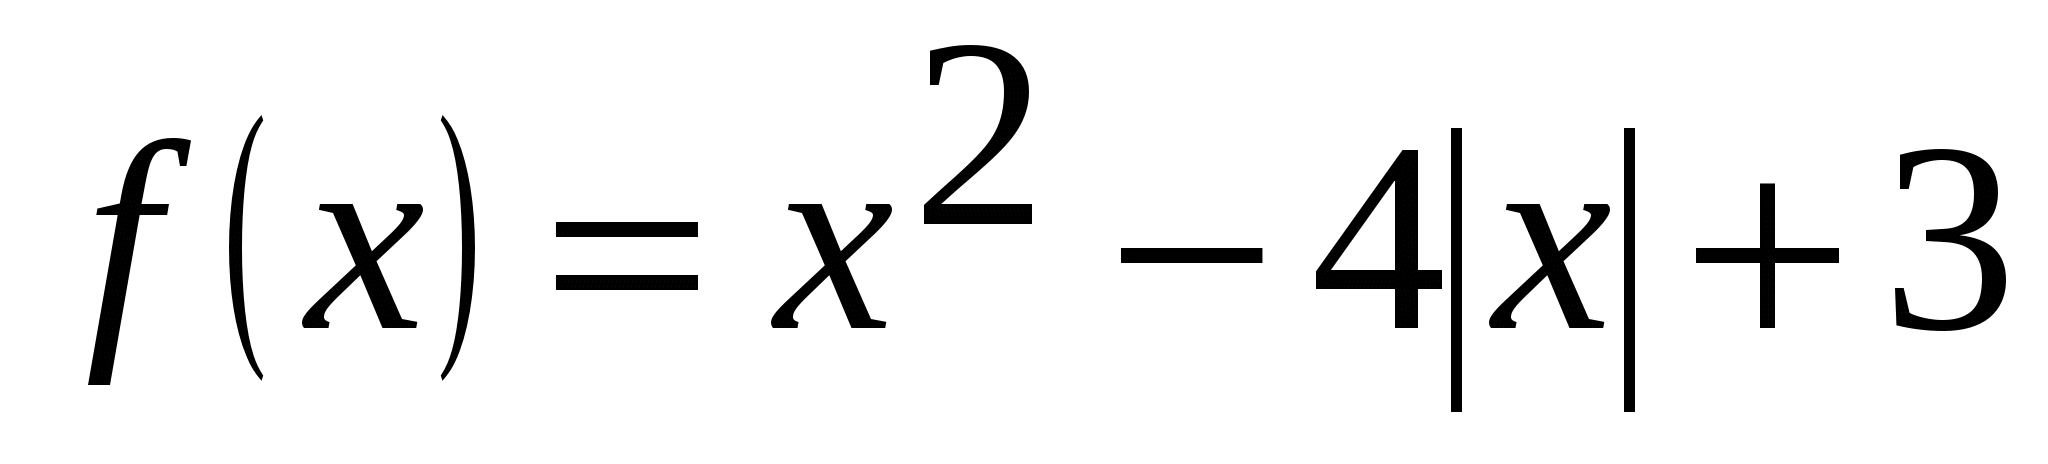 Семестровая контрольная по алгебре 9 класс (20 вариантов)